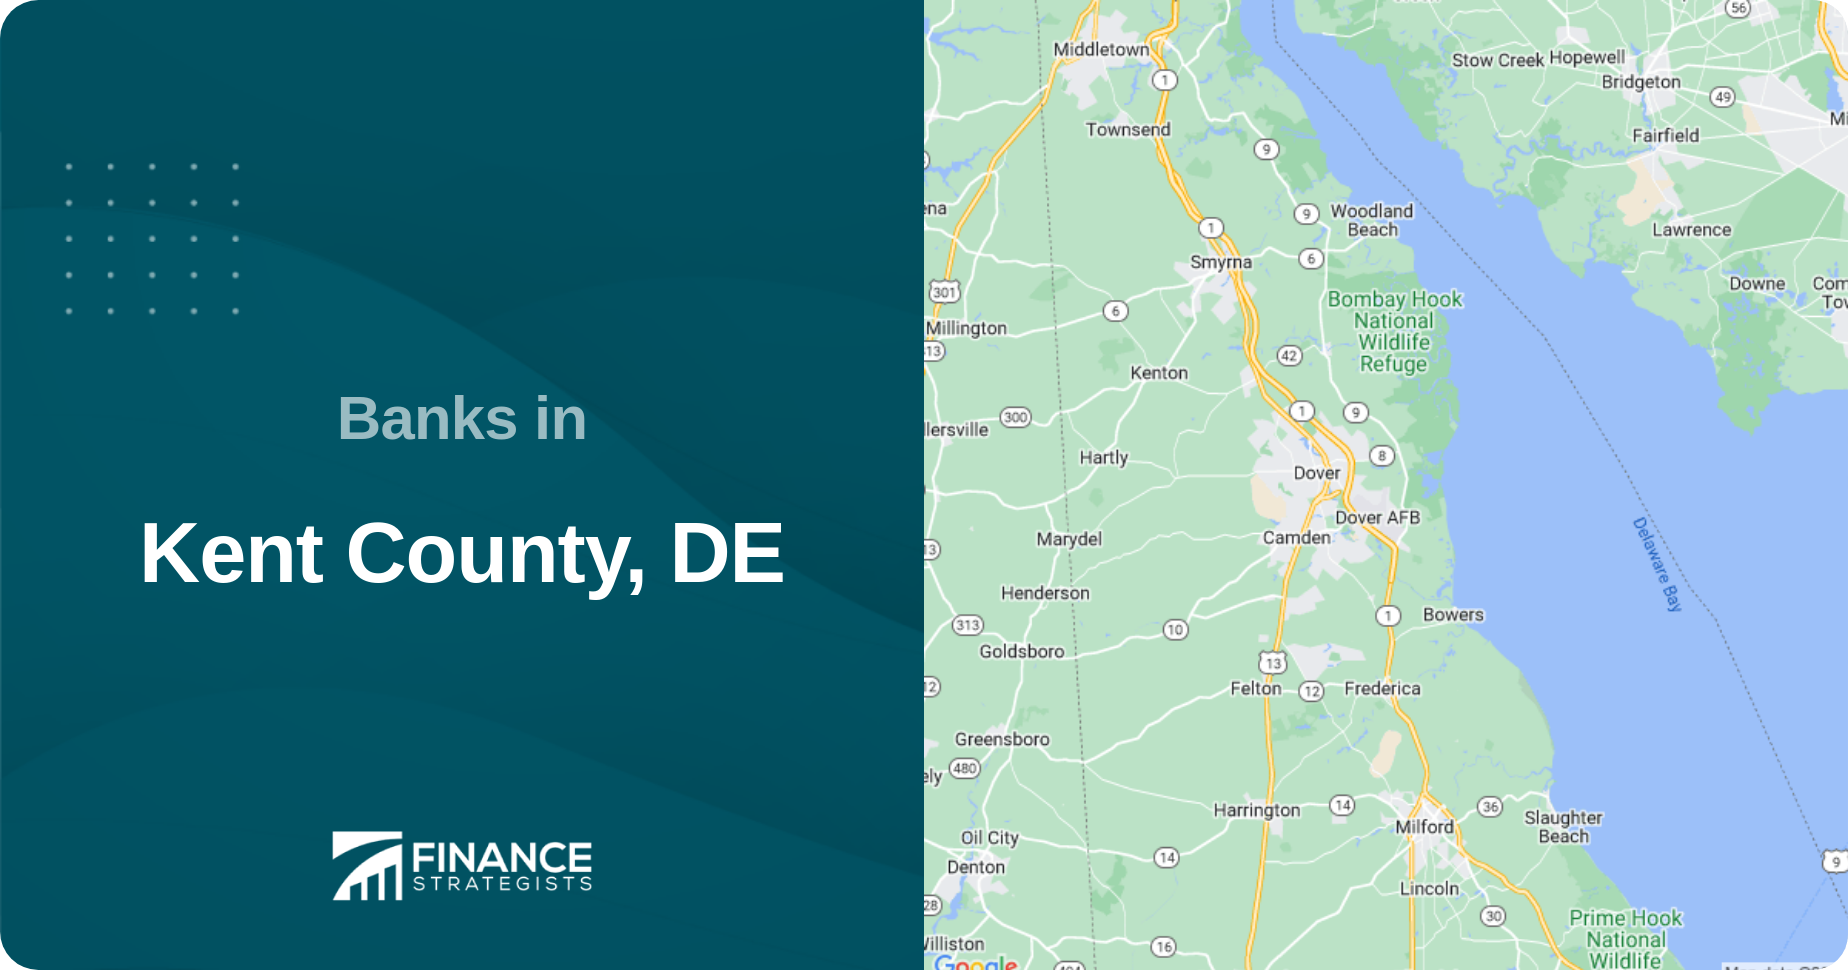 Banks in Kent County, DE